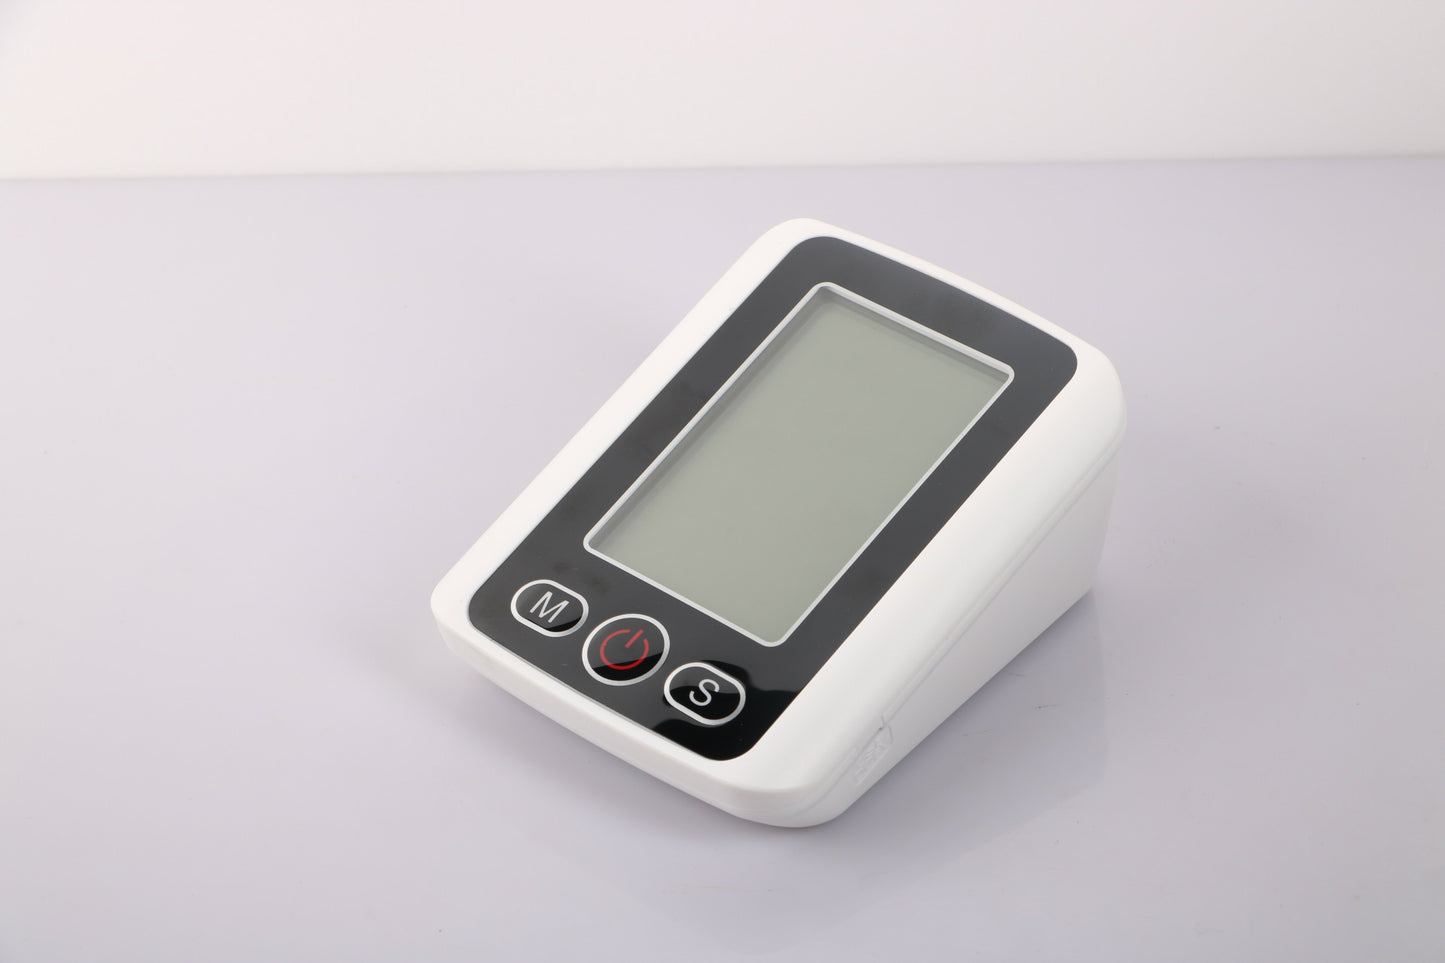 جهاز قياس ضغط الدم الإلكتروني بشاشة كبيرة للمنزل مزود بإضاءة خلفية بثلاثة ألوان لمراقبة ضغط الدم من نوع الذراع جهاز قياس ضغط الدم الصوتي